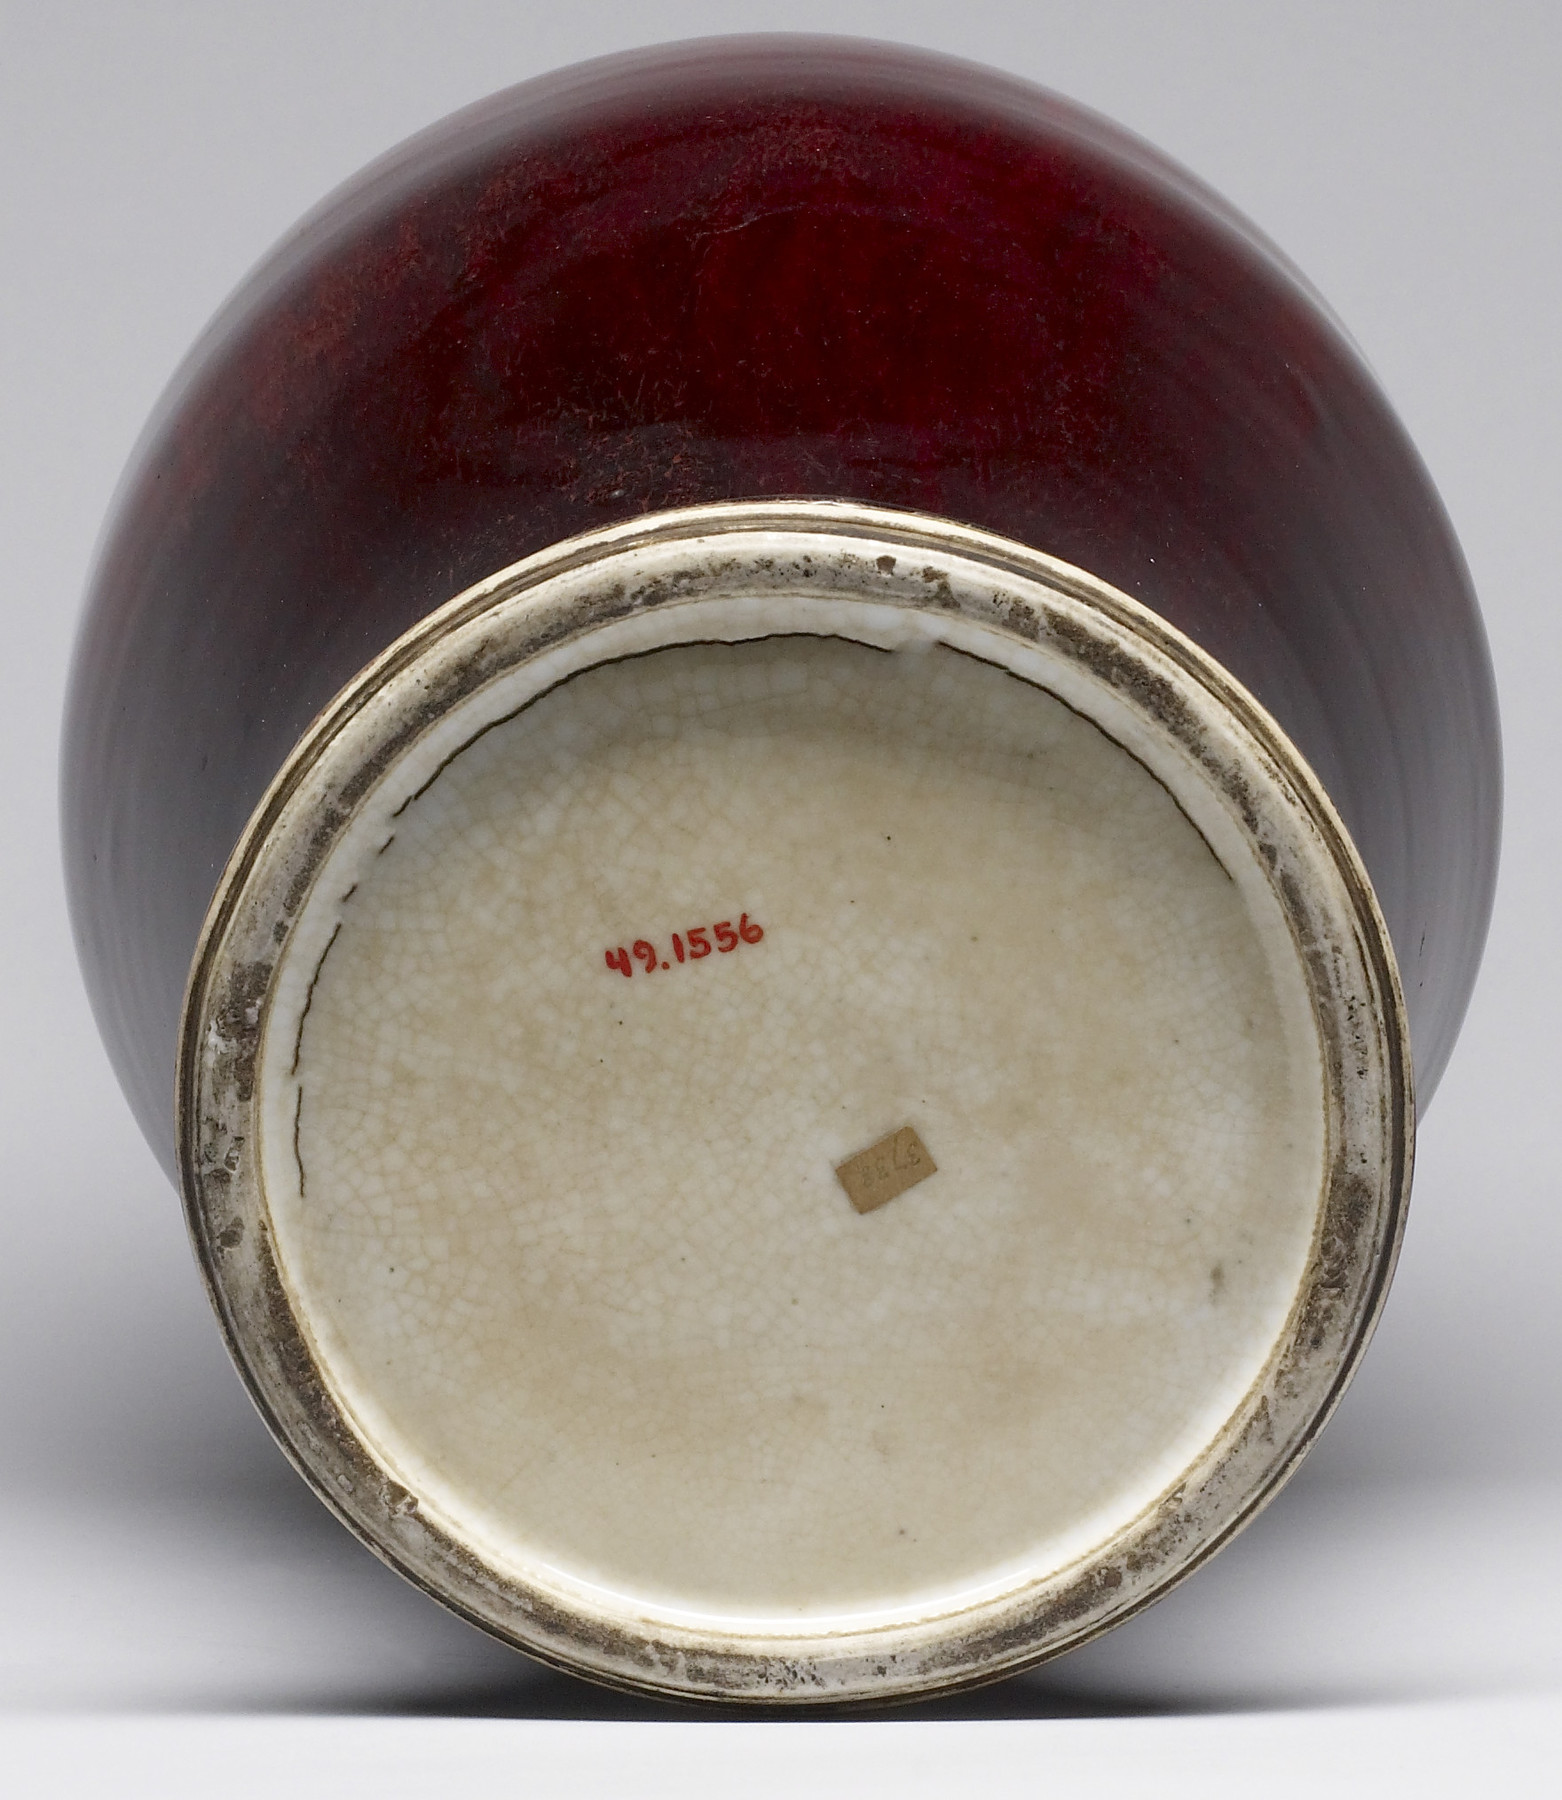 Image for Large Crimson Baluster Vase